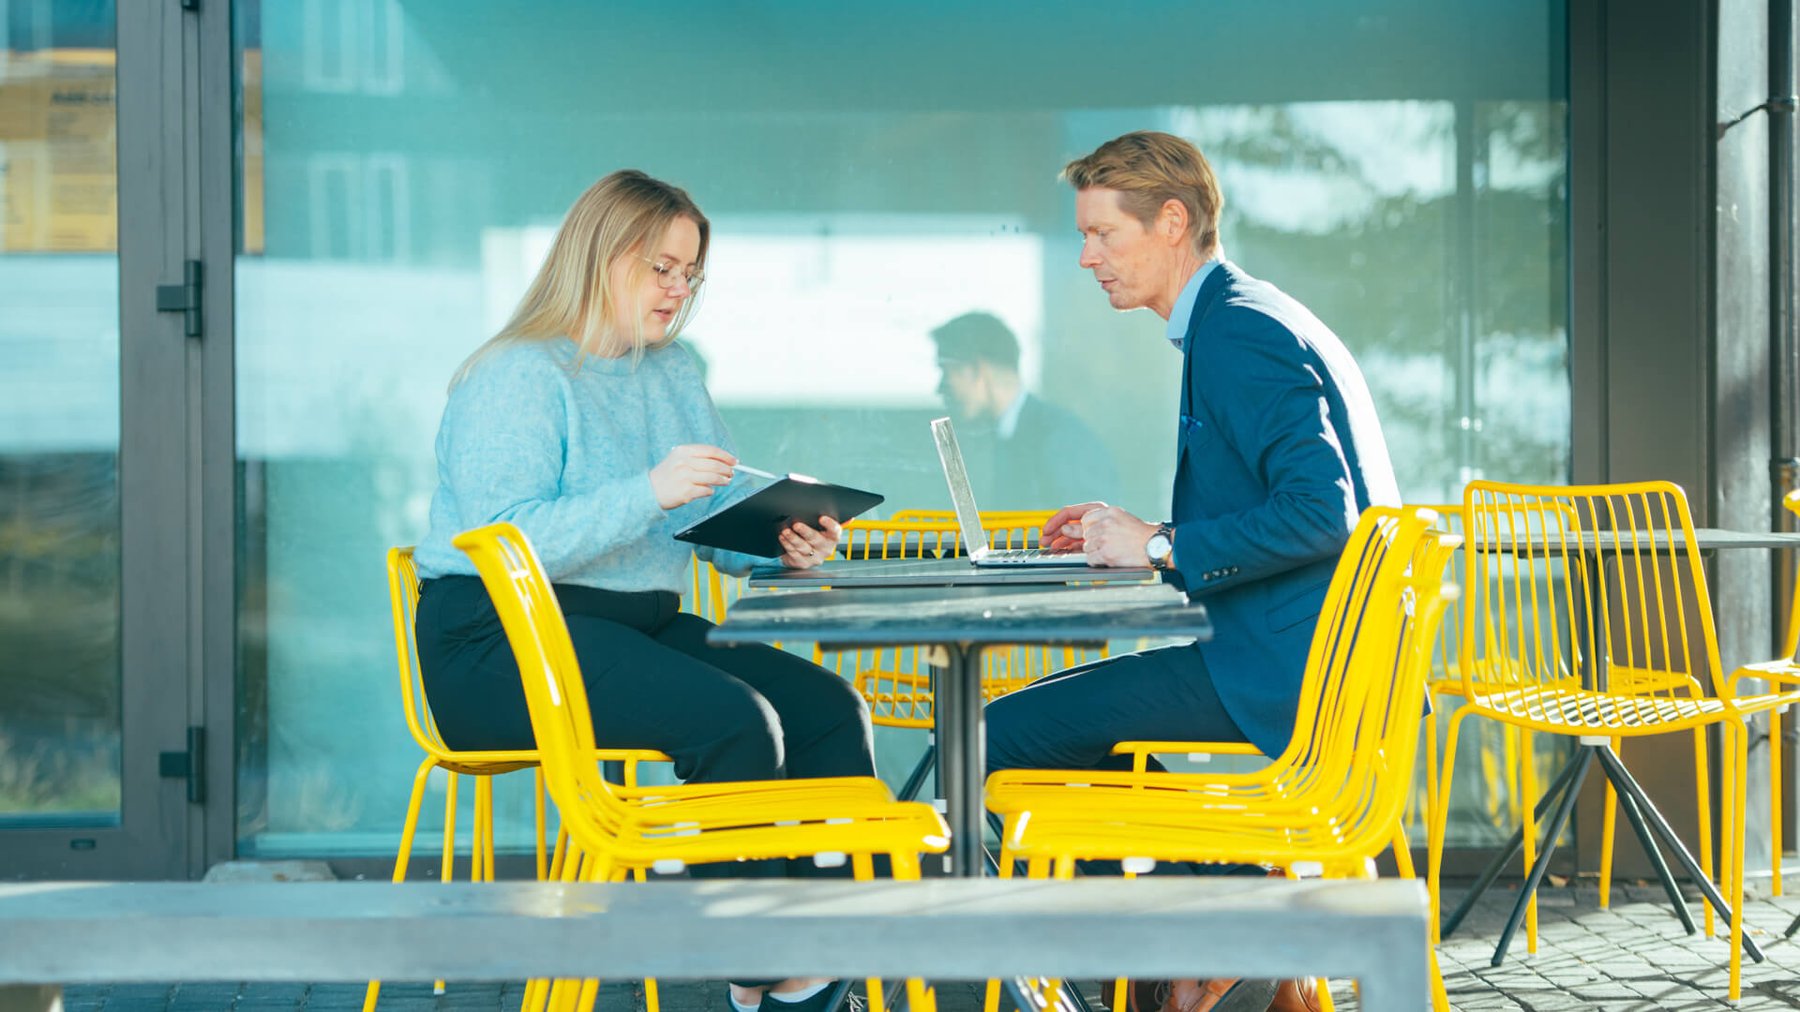 En dame og en mann sitter på en kafe med gule stoler og jobber